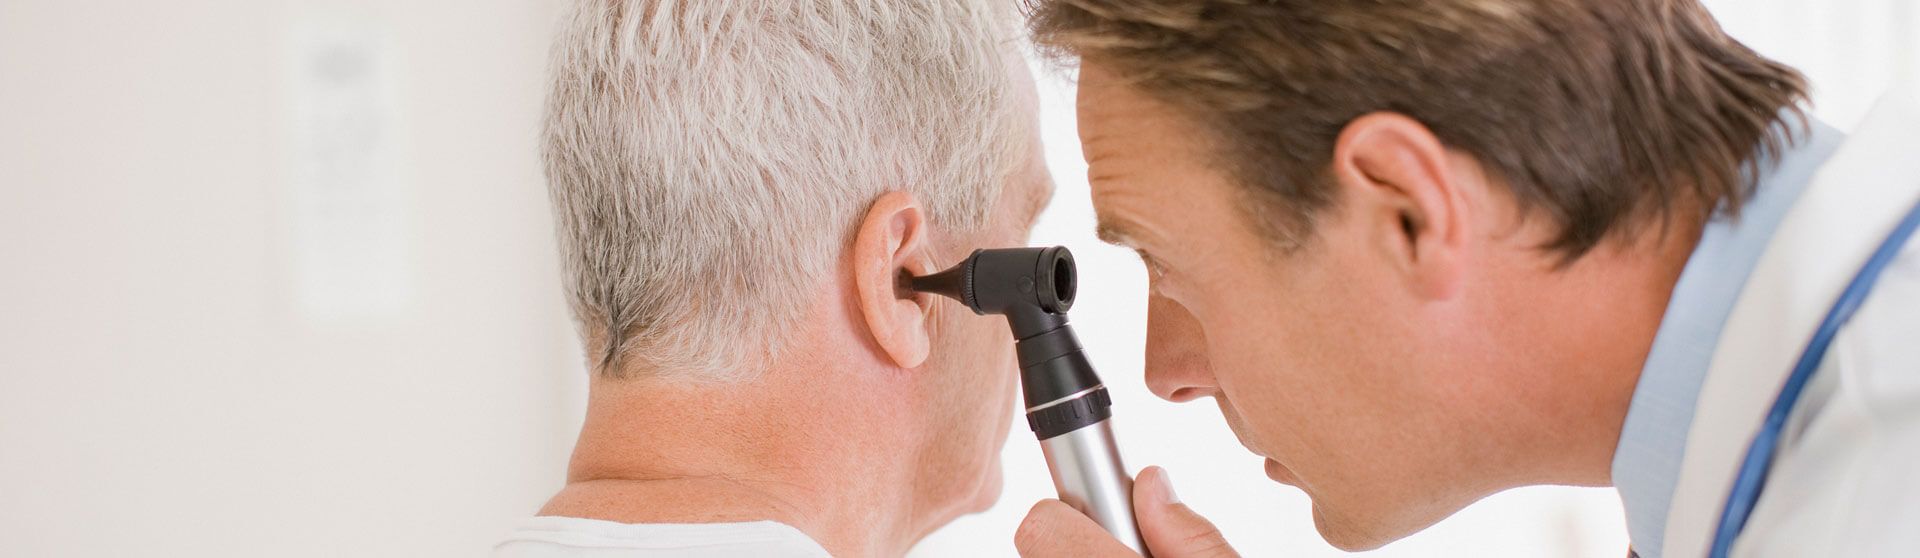 HNO-Arzt untersucht das Ohr eines Patienten.